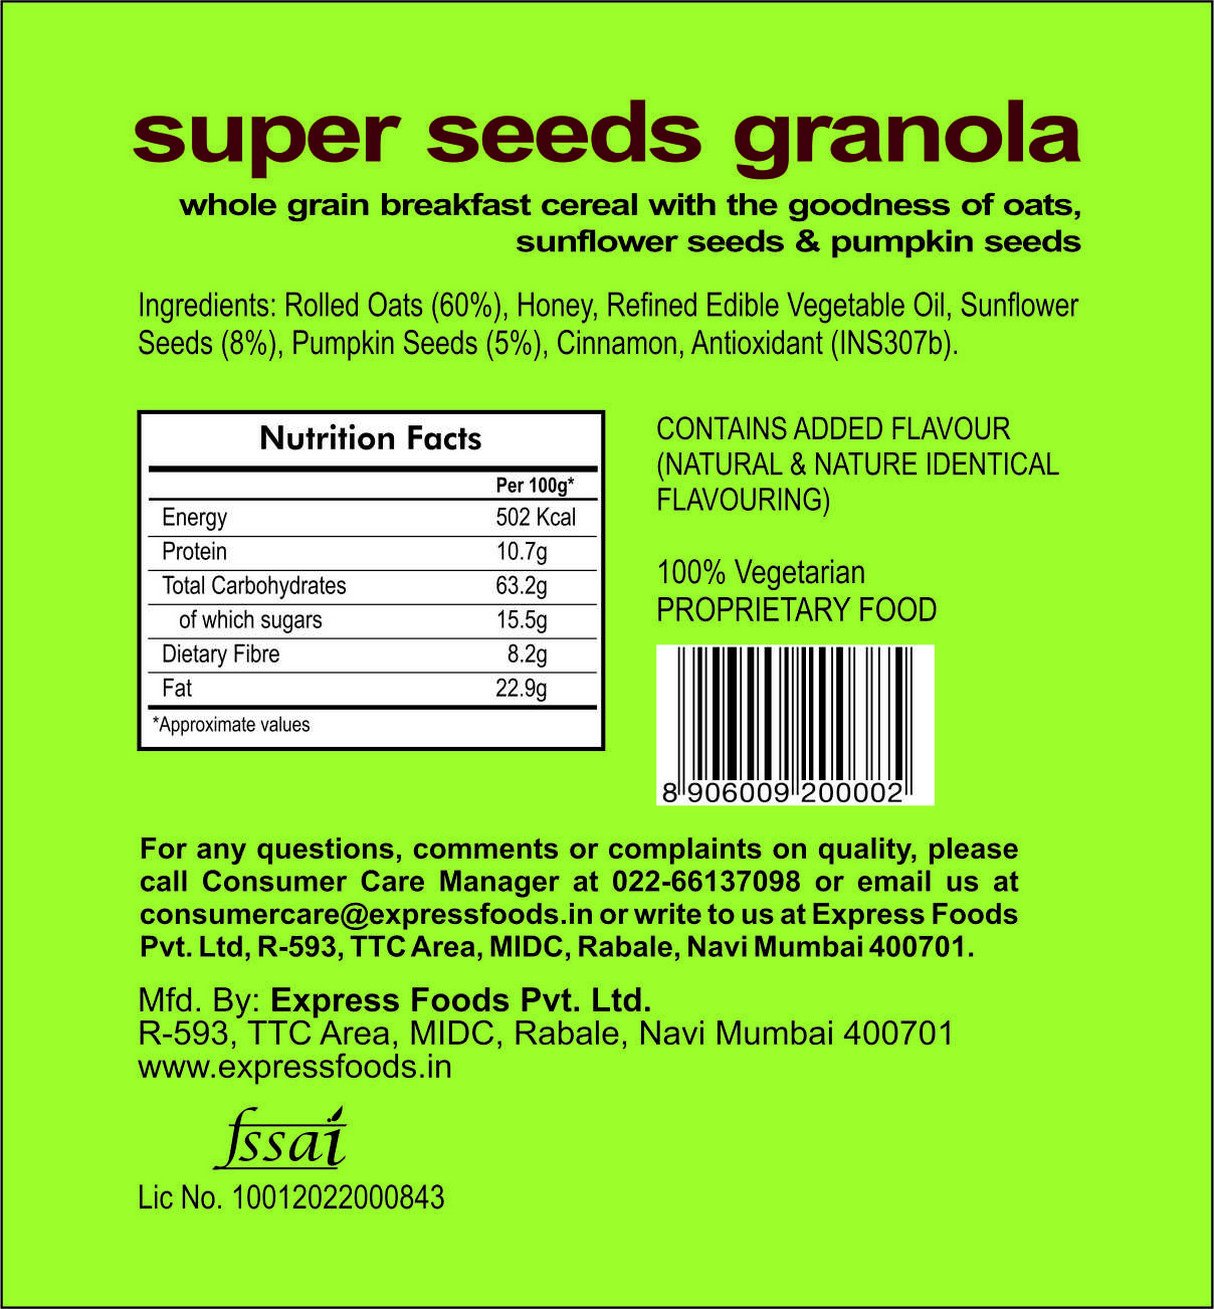 Express Foods Super Seeds Granola Image